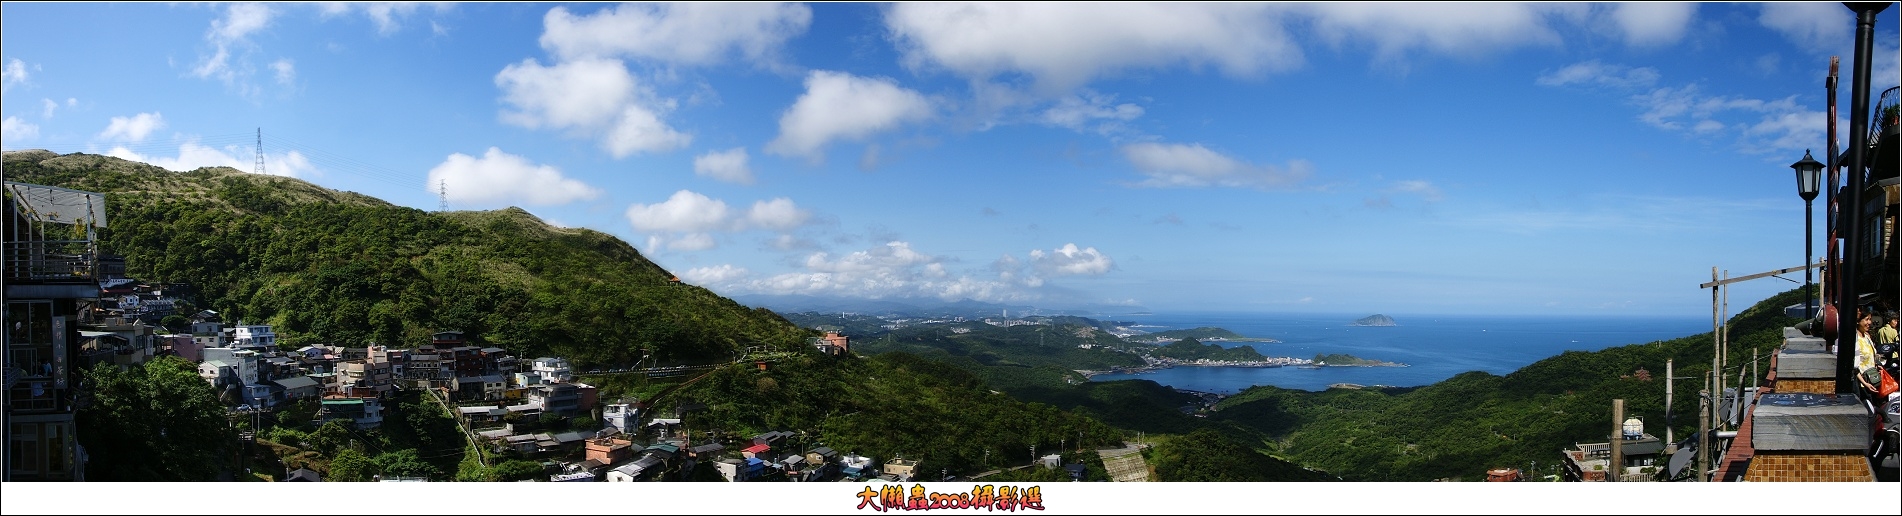 台湾岛图片 全景图片